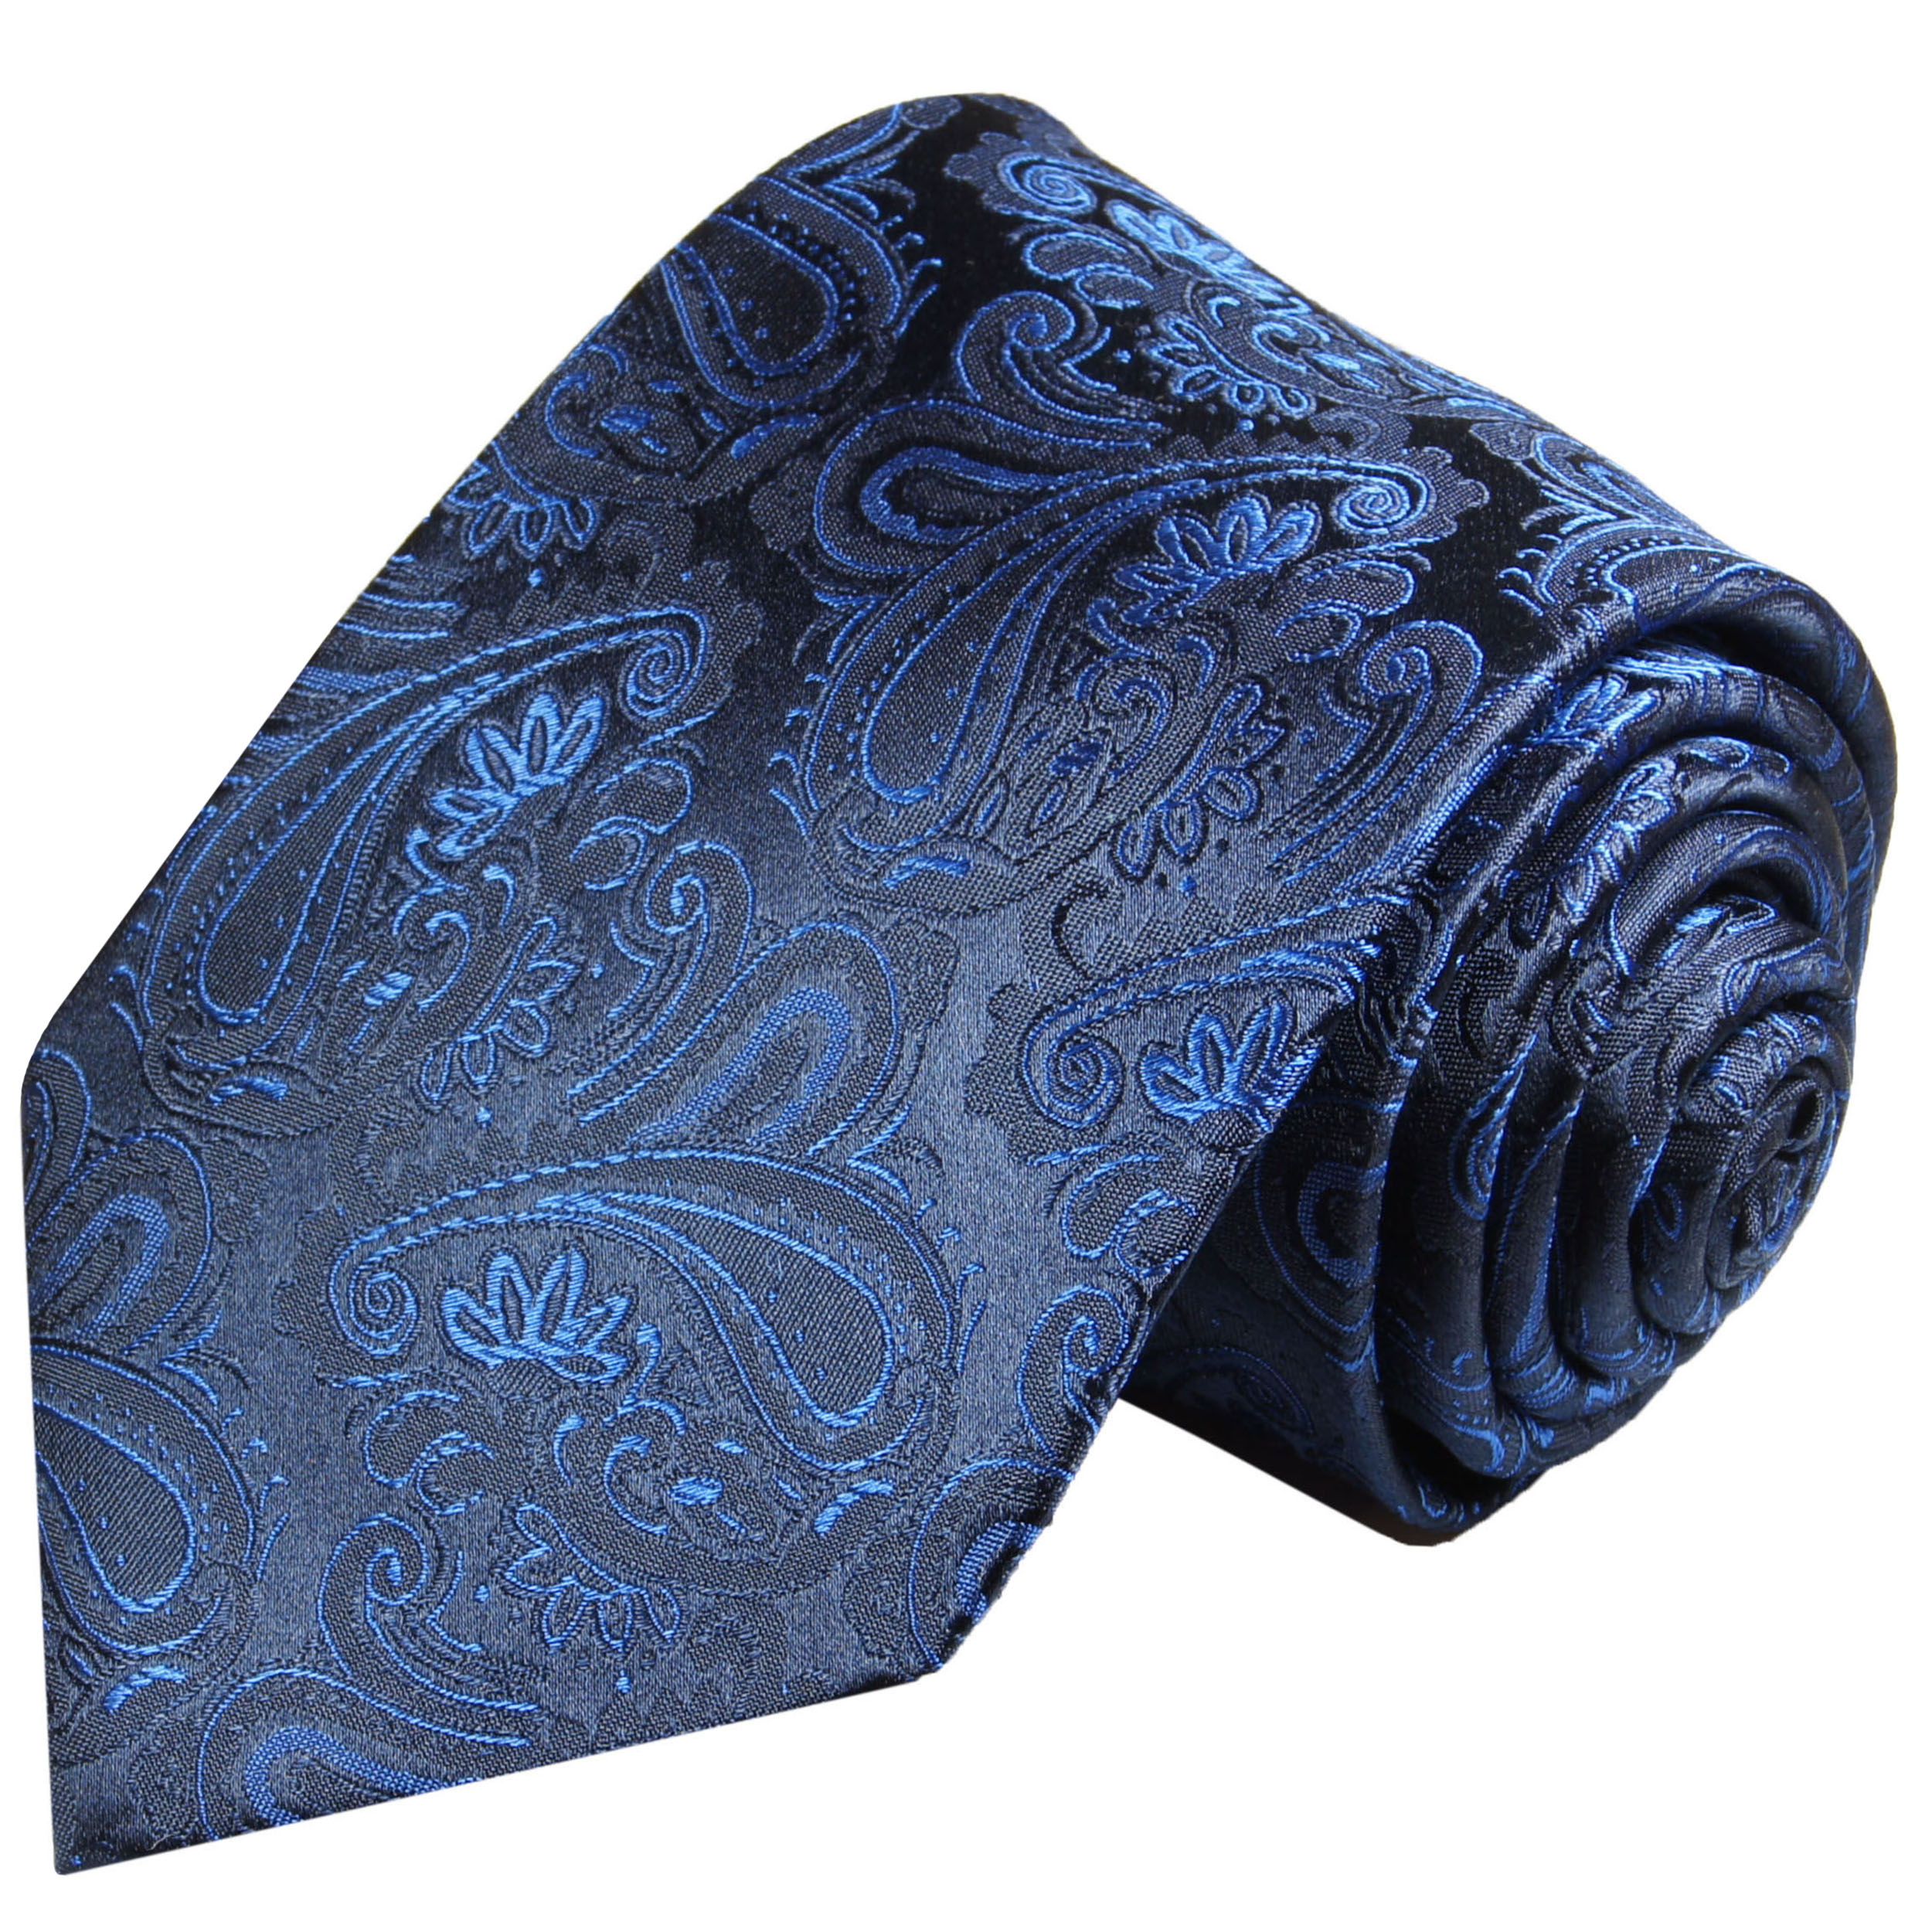 Krawatte blau paisley 518 | JETZT BESTELLEN - Paul Malone Shop